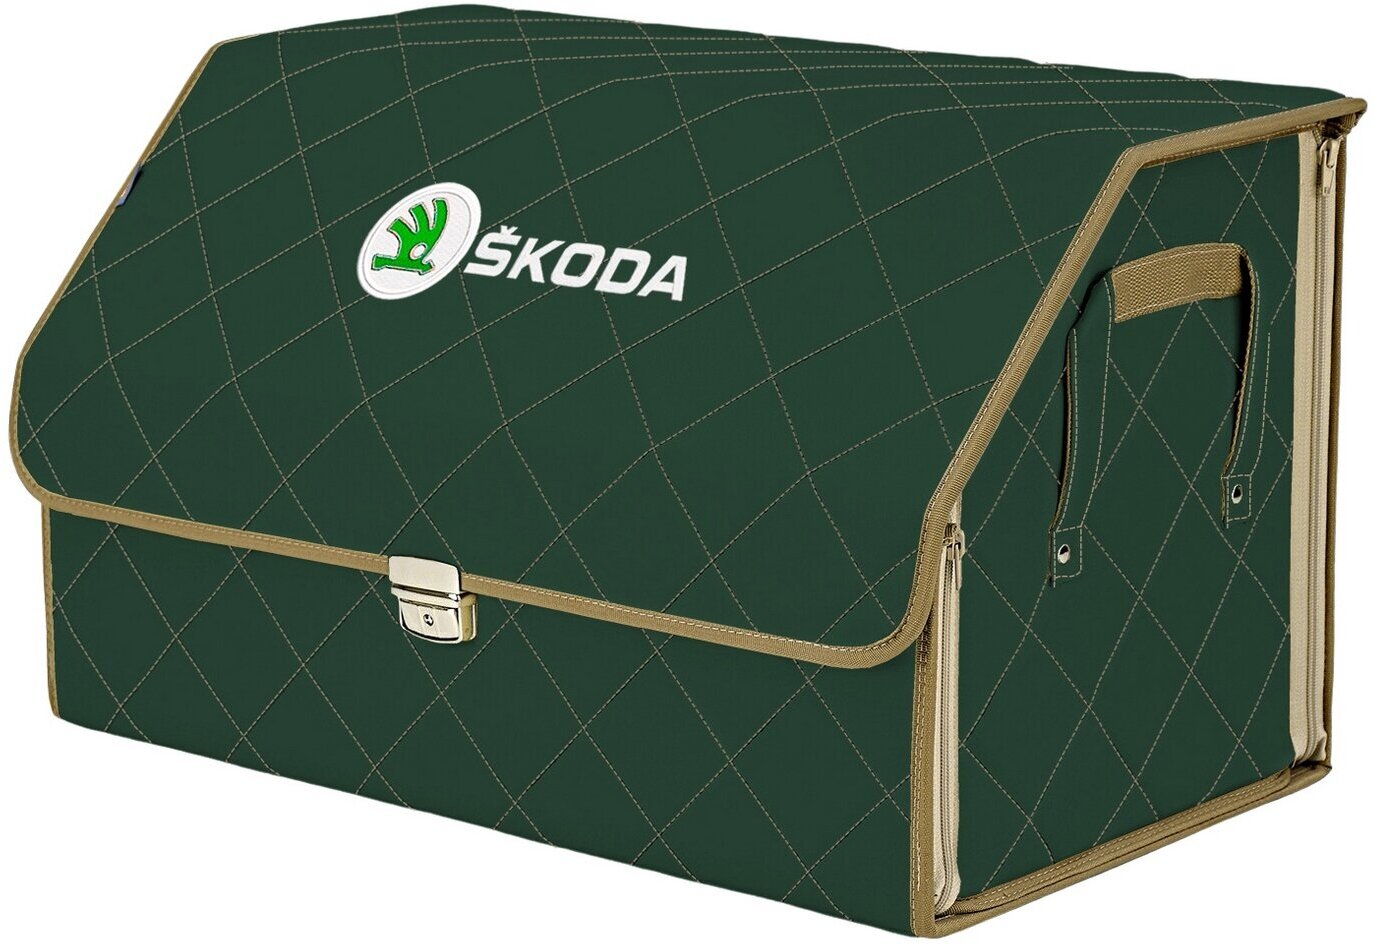 Органайзер-саквояж в багажник "Союз Премиум" (размер XL). Цвет: зеленый с бежевой прострочкой Ромб и вышивкой Skoda (Шкода).